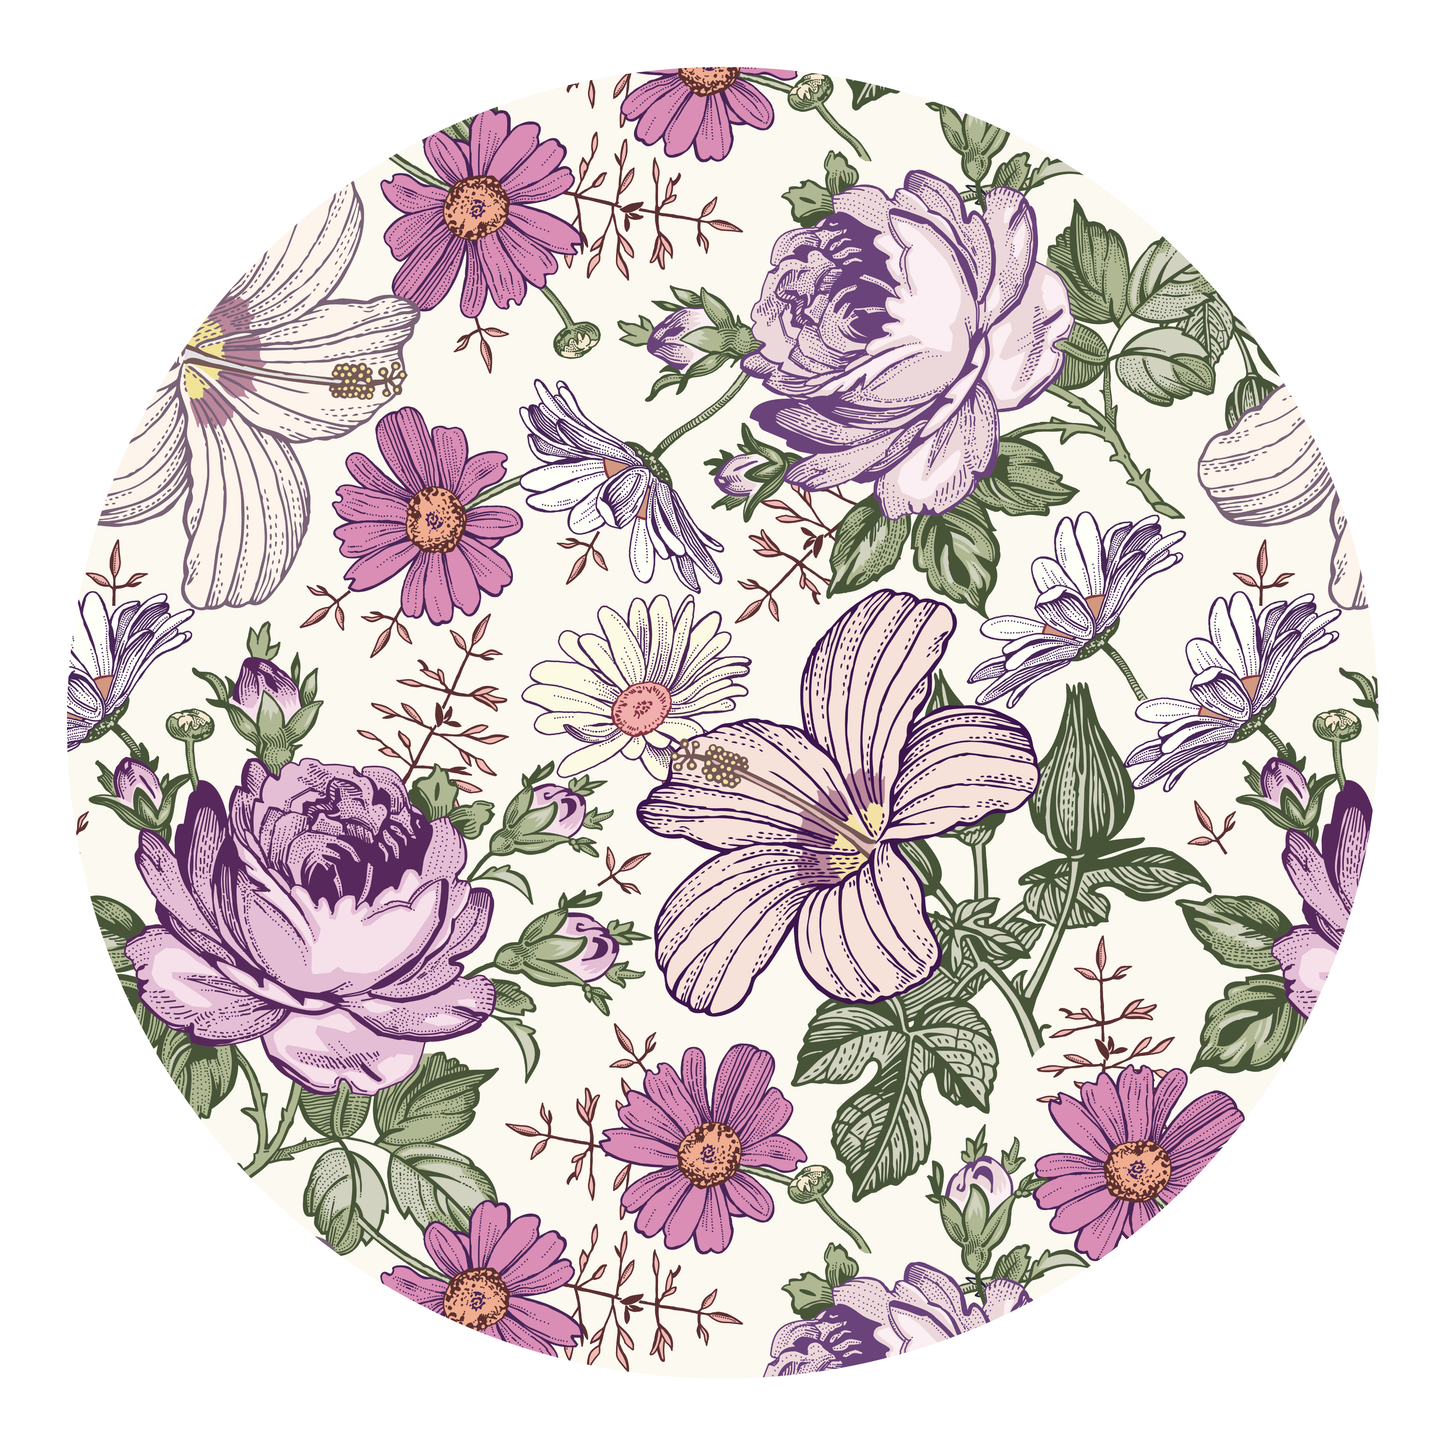 Lounge Twirl Dress | Vintage Violet Floral